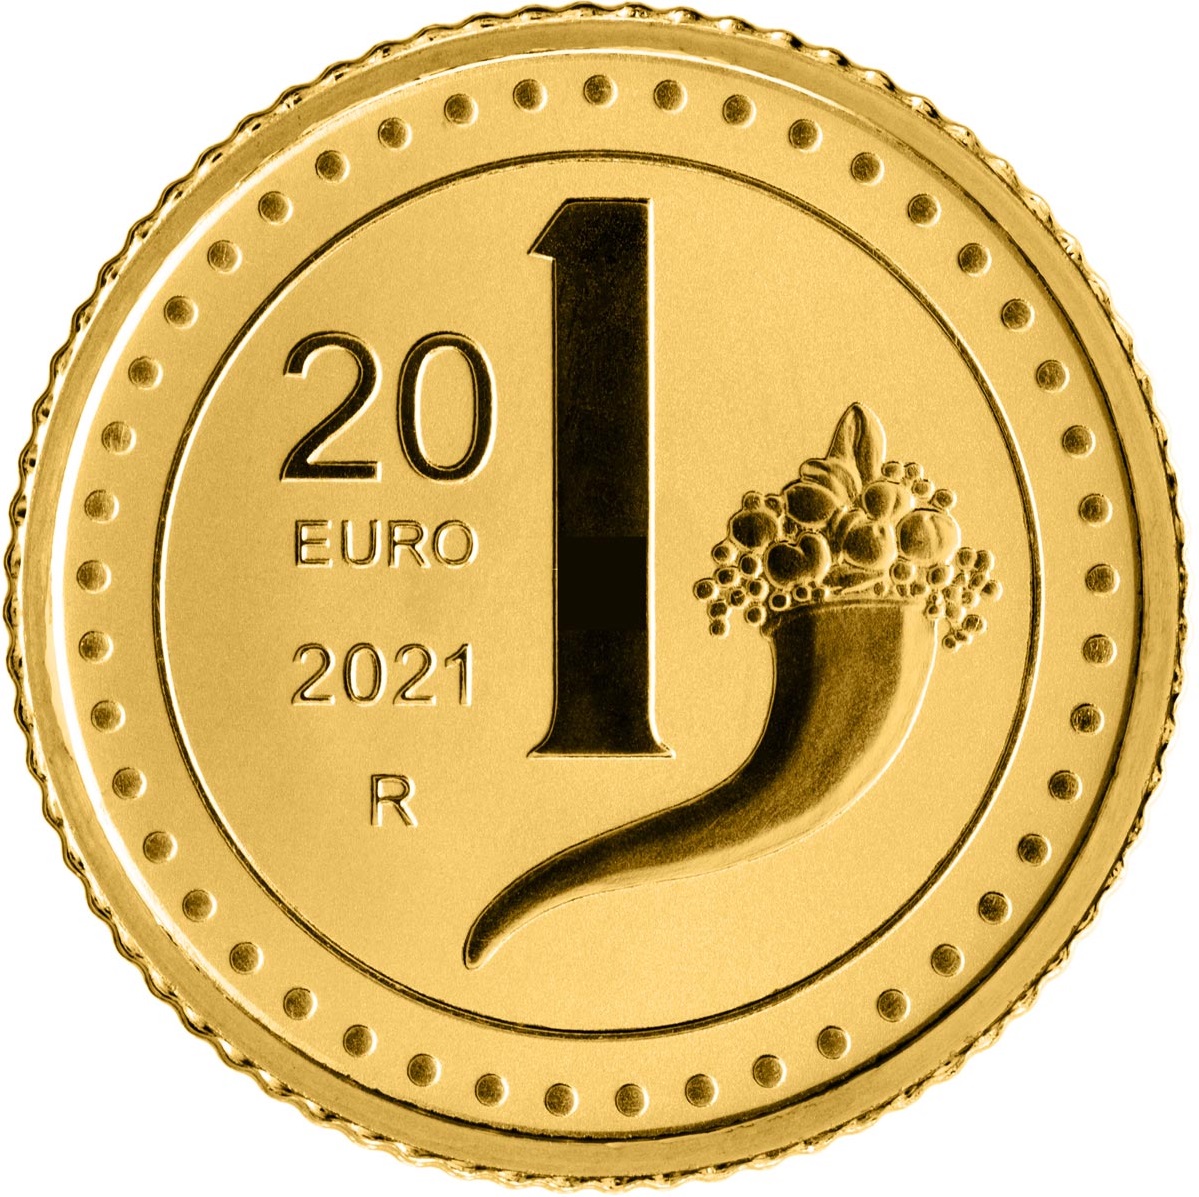 IT 20 Euro 2021 R